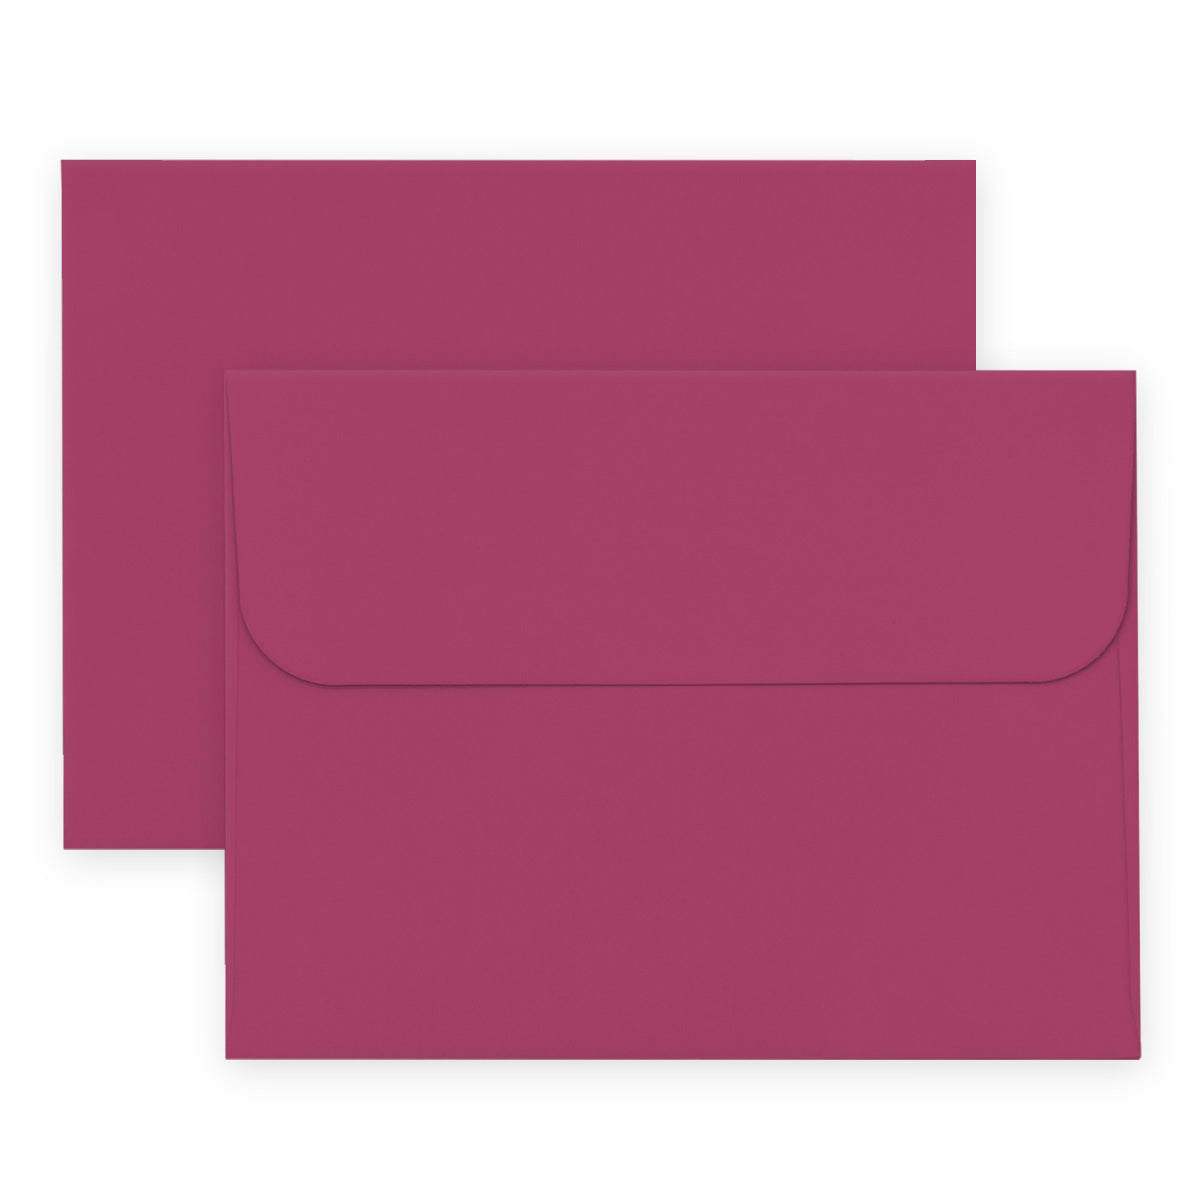 Envelope Crafty Necessities: Razzleberry Envelope (12/pk)